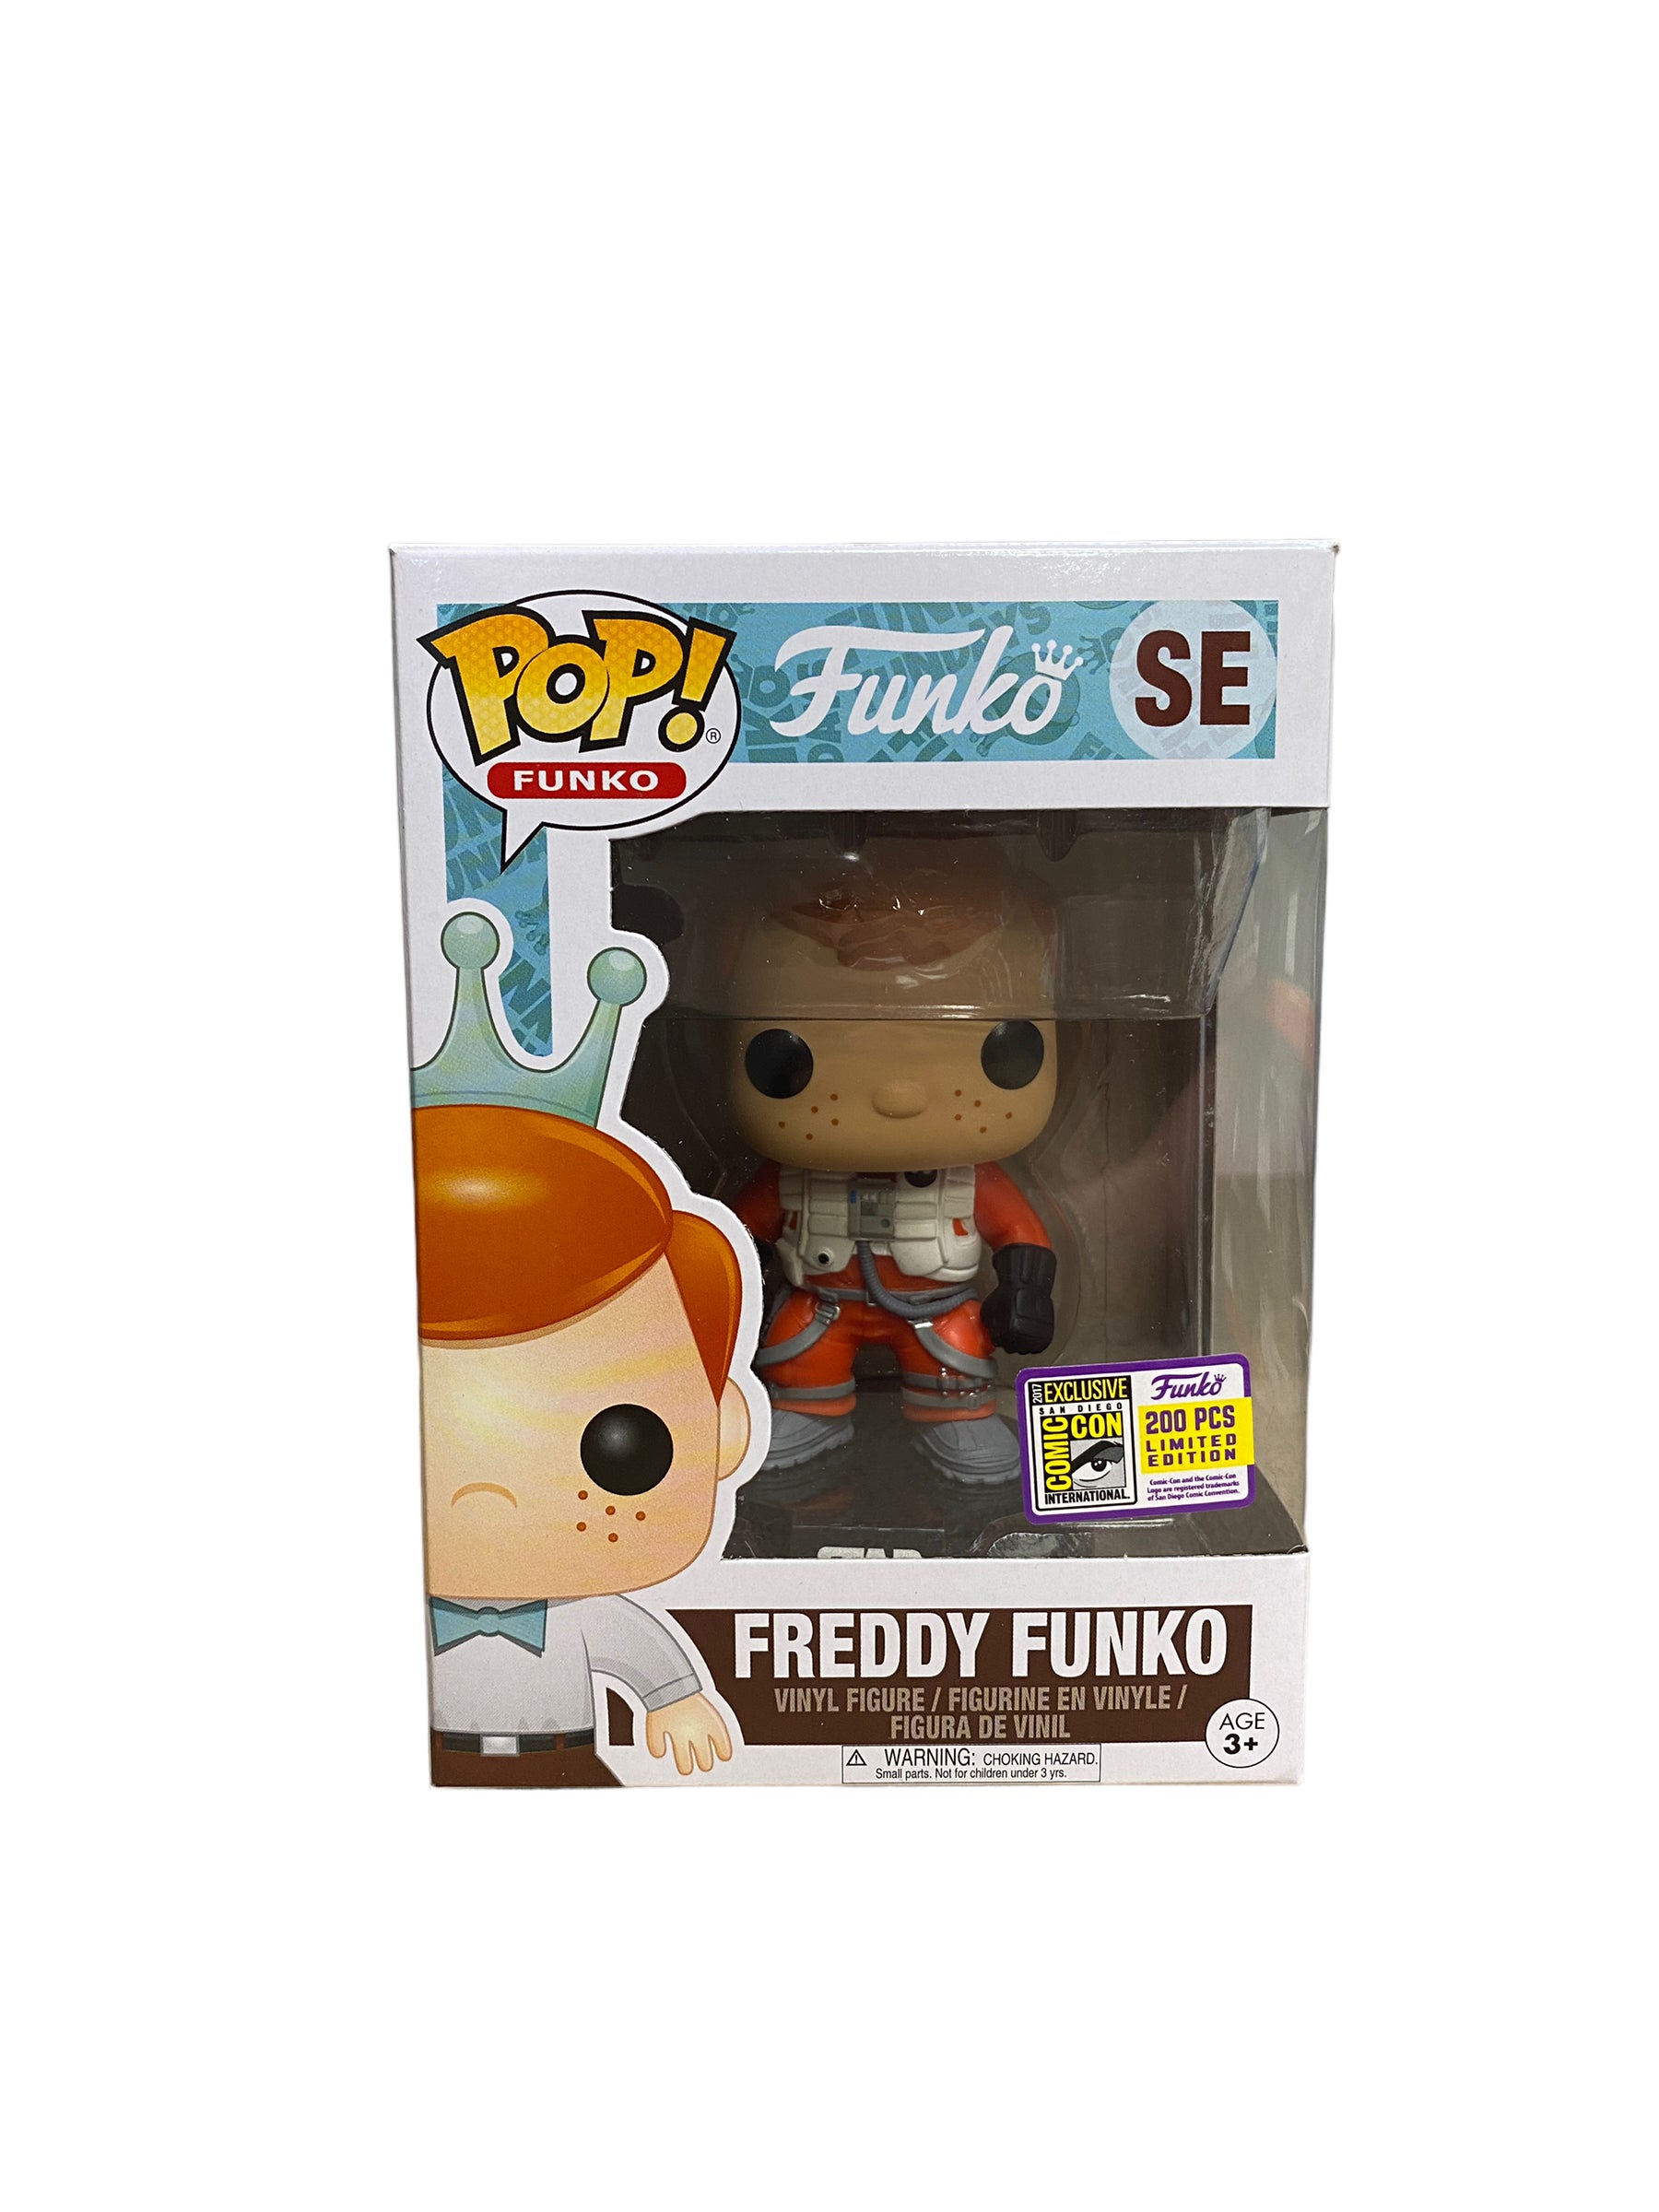 Freddy Funko as Poe Dameron Funko Pop! - SDCC 2017 Exclusive LE200 Pcs - Condition 8.75/10